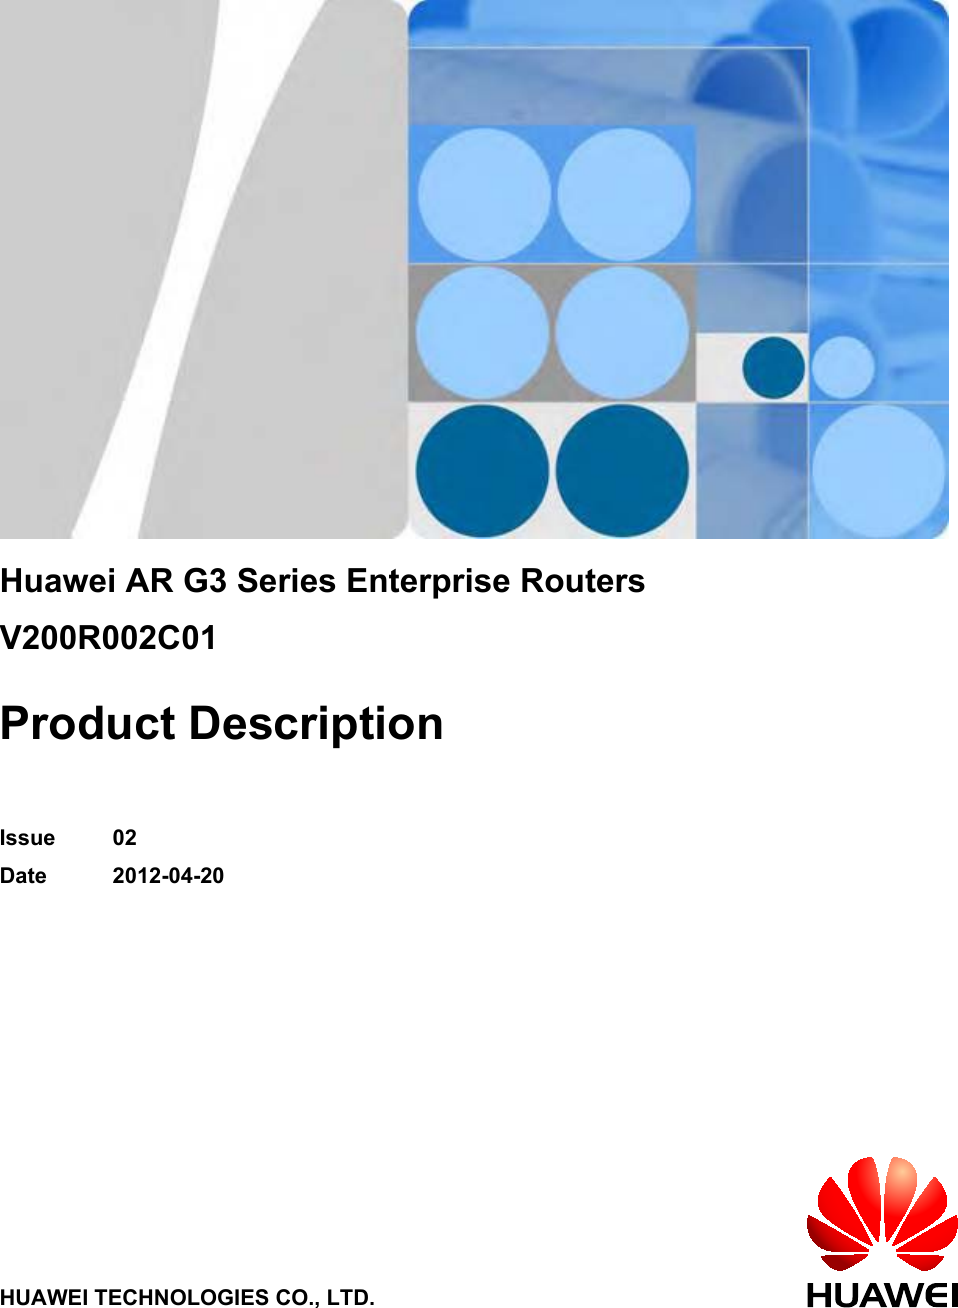 Huawei AR G3 Series Enterprise RoutersV200R002C01Product DescriptionIssue 02Date 2012-04-20HUAWEI TECHNOLOGIES CO., LTD.